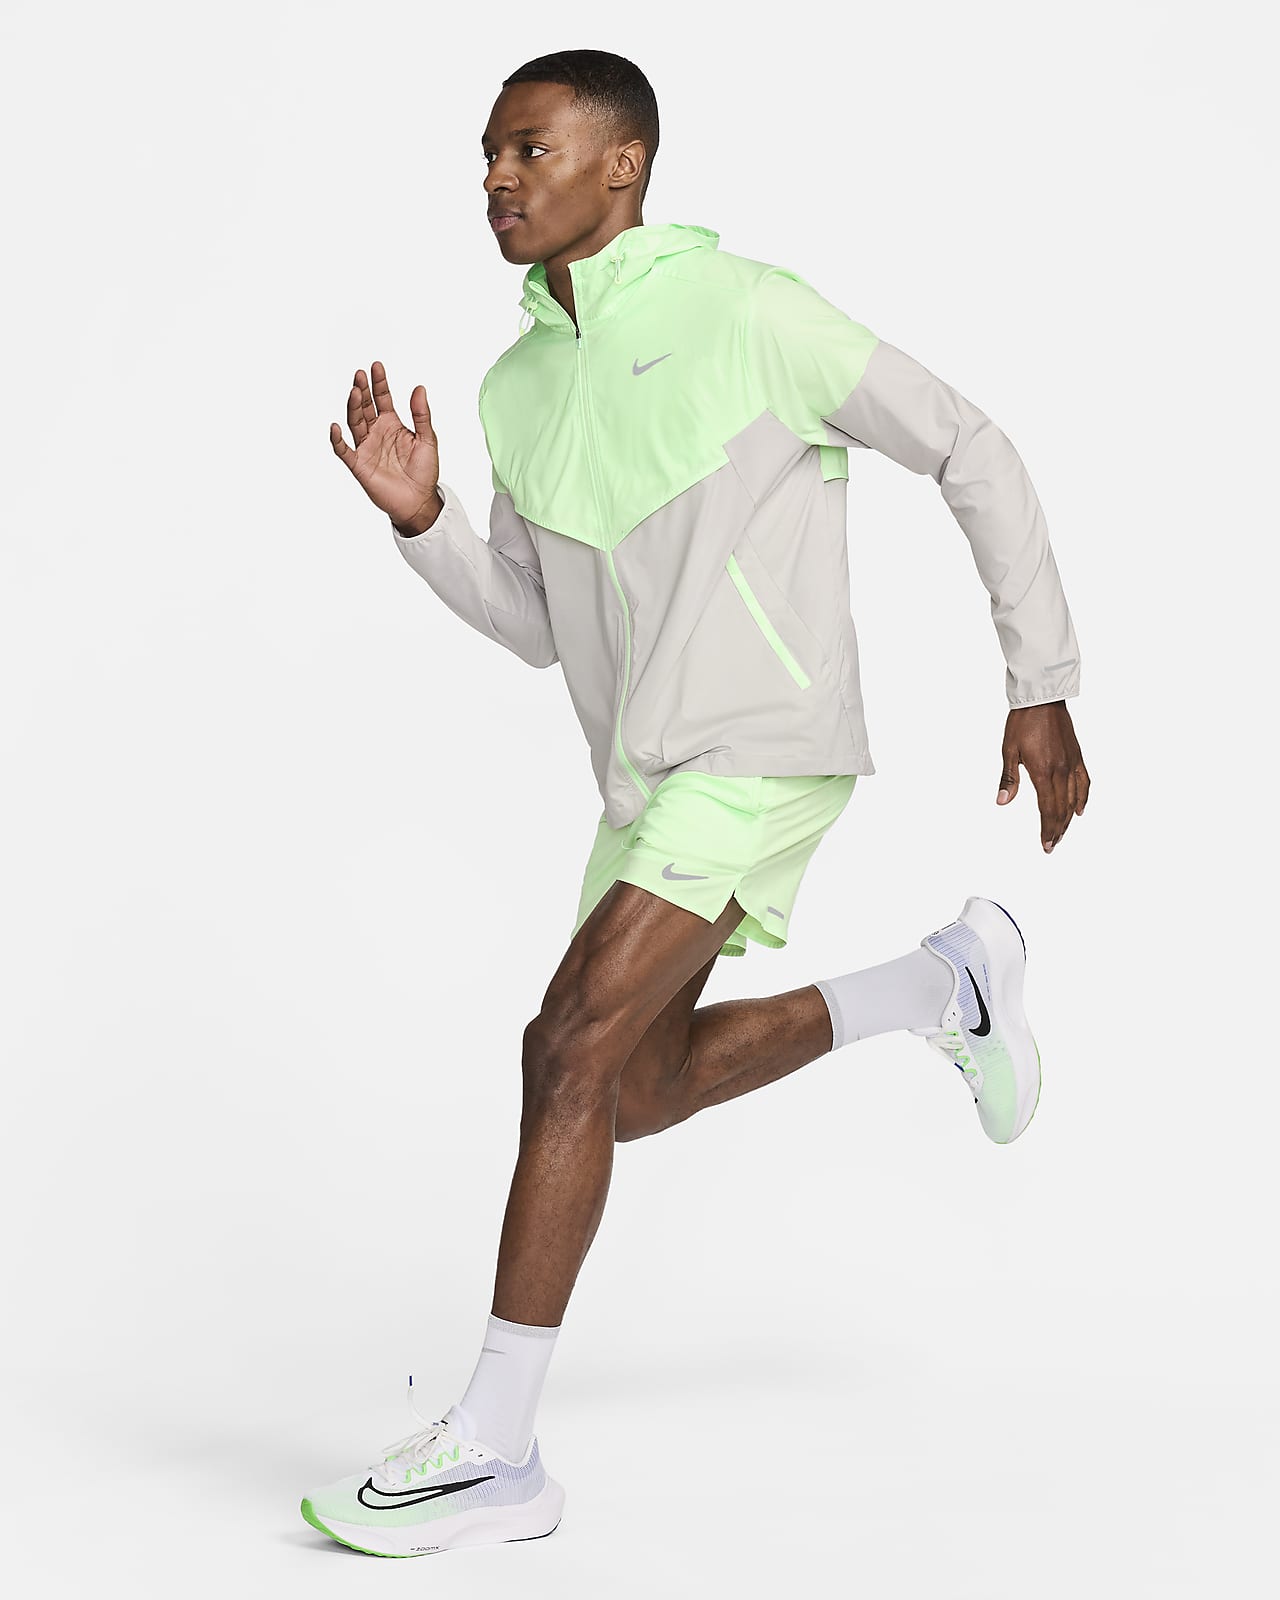 Men's, Nike Windrunner Running Jacket